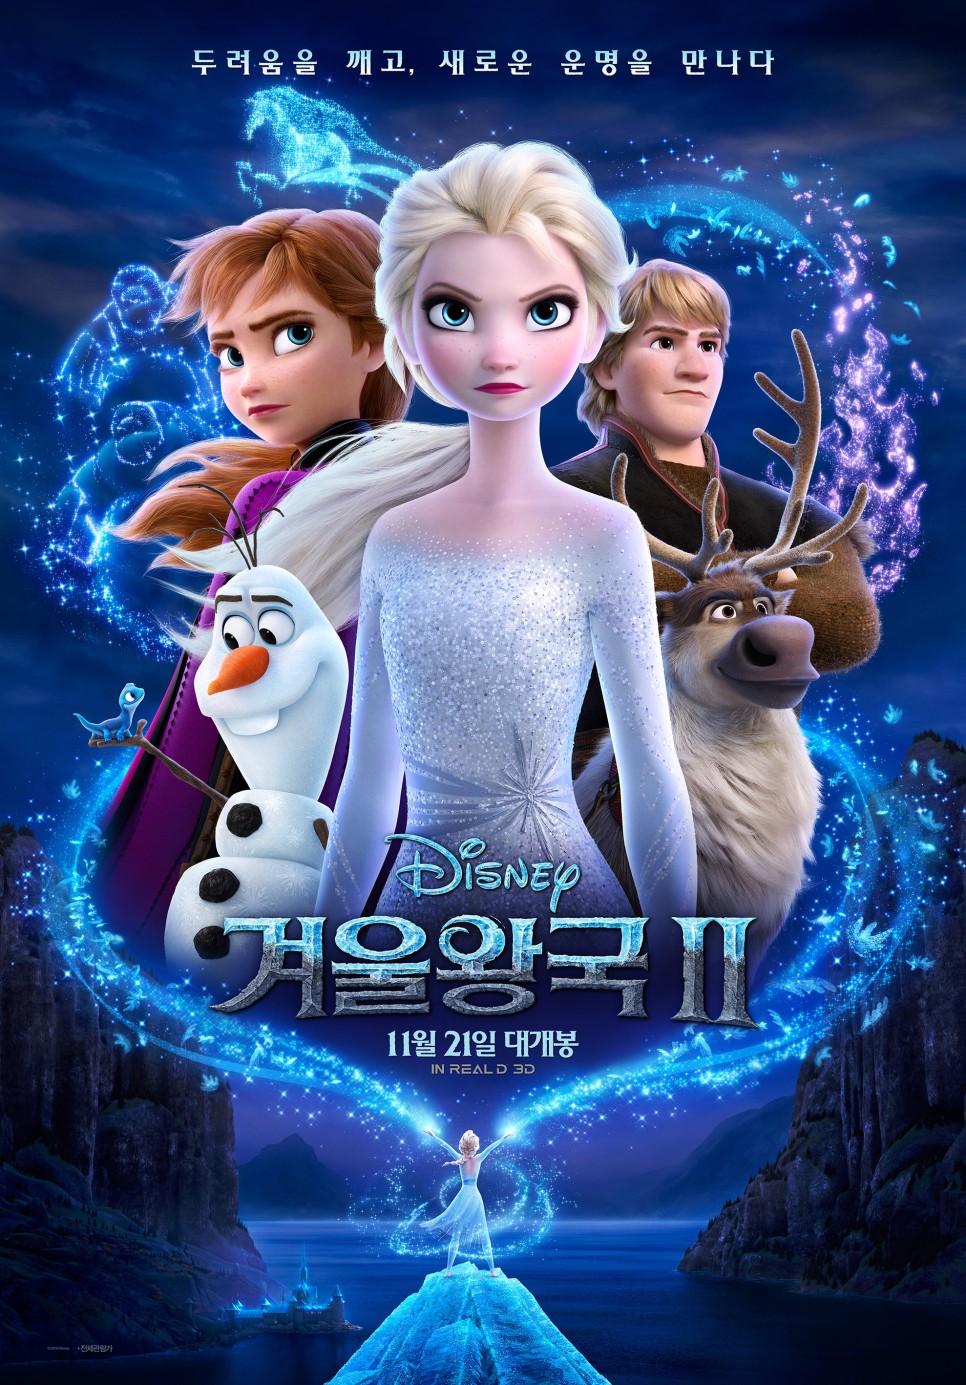 겨울왕국 재개봉 특전 이벤트 CGV 메가박스 씨네Q 뱃지 필름마크 포스터 오티 굿즈